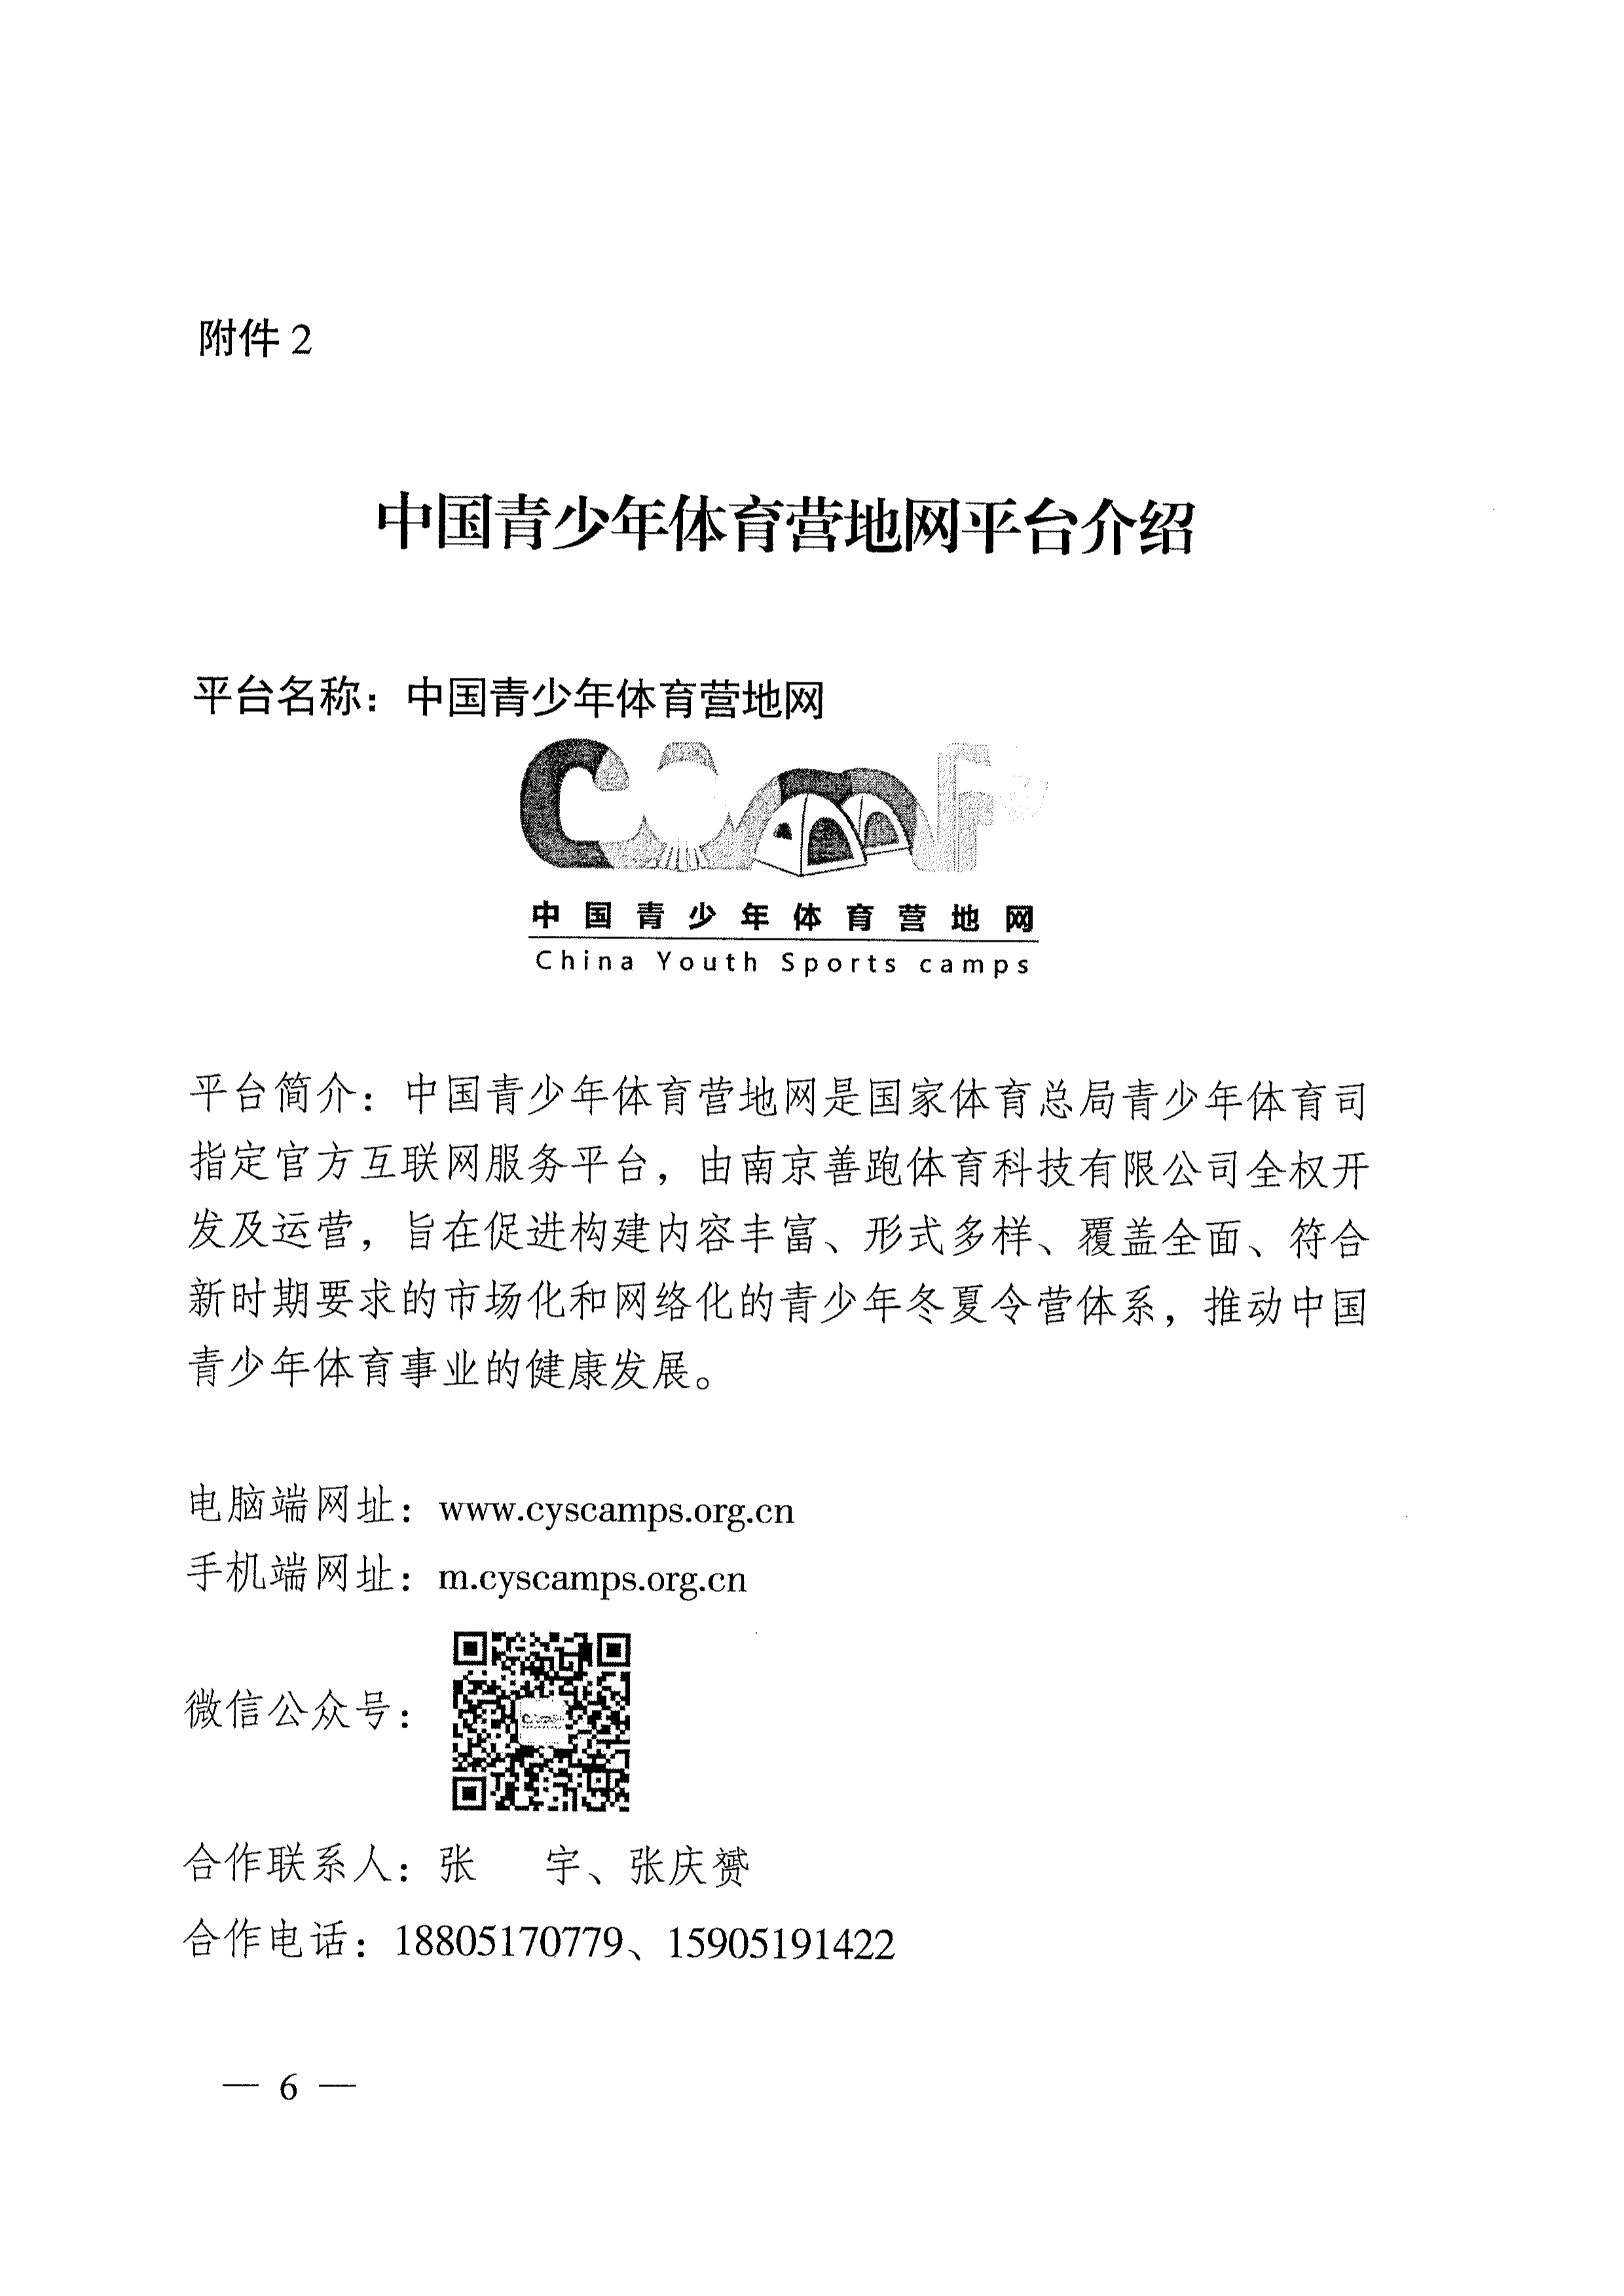 061513200429_0关于开展2018年江苏省青少年体育冬夏令营活动的通知_6.Jpeg